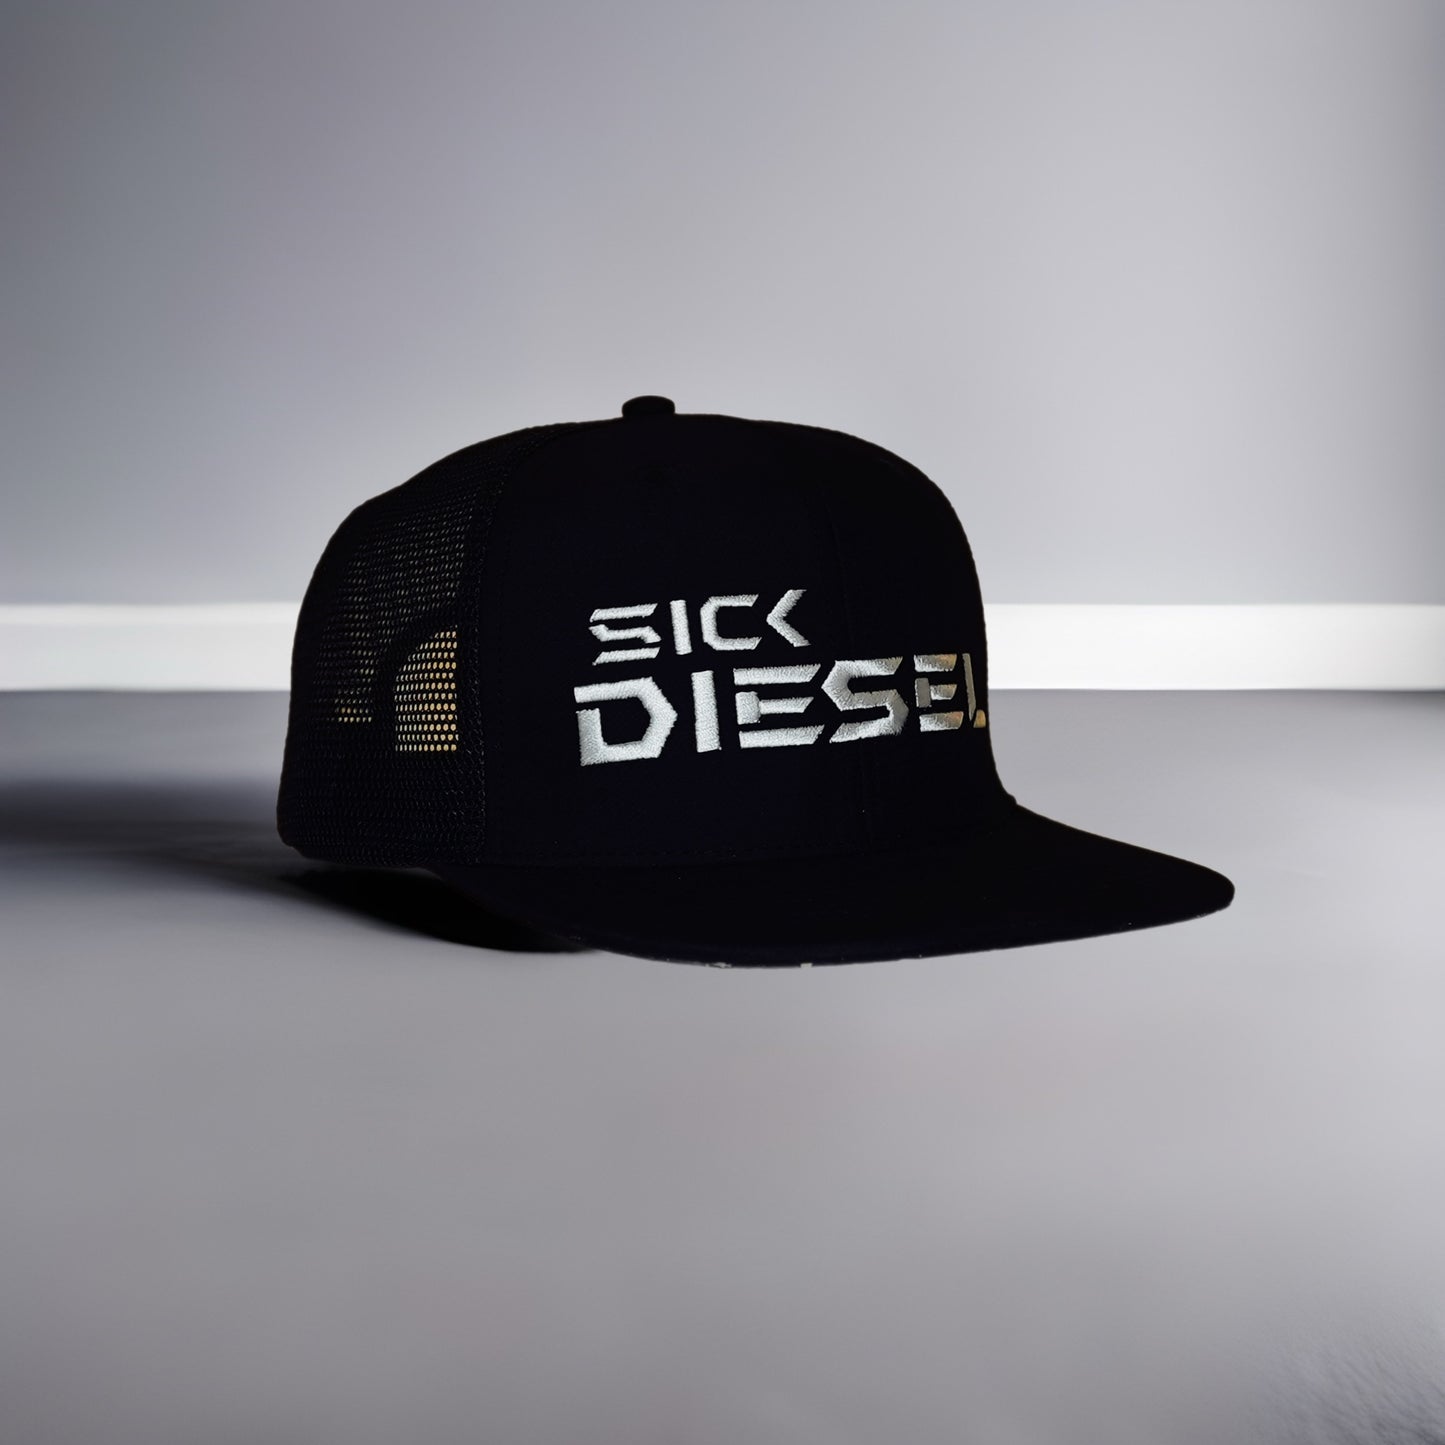 Sick Diesel Flat Bill Hat